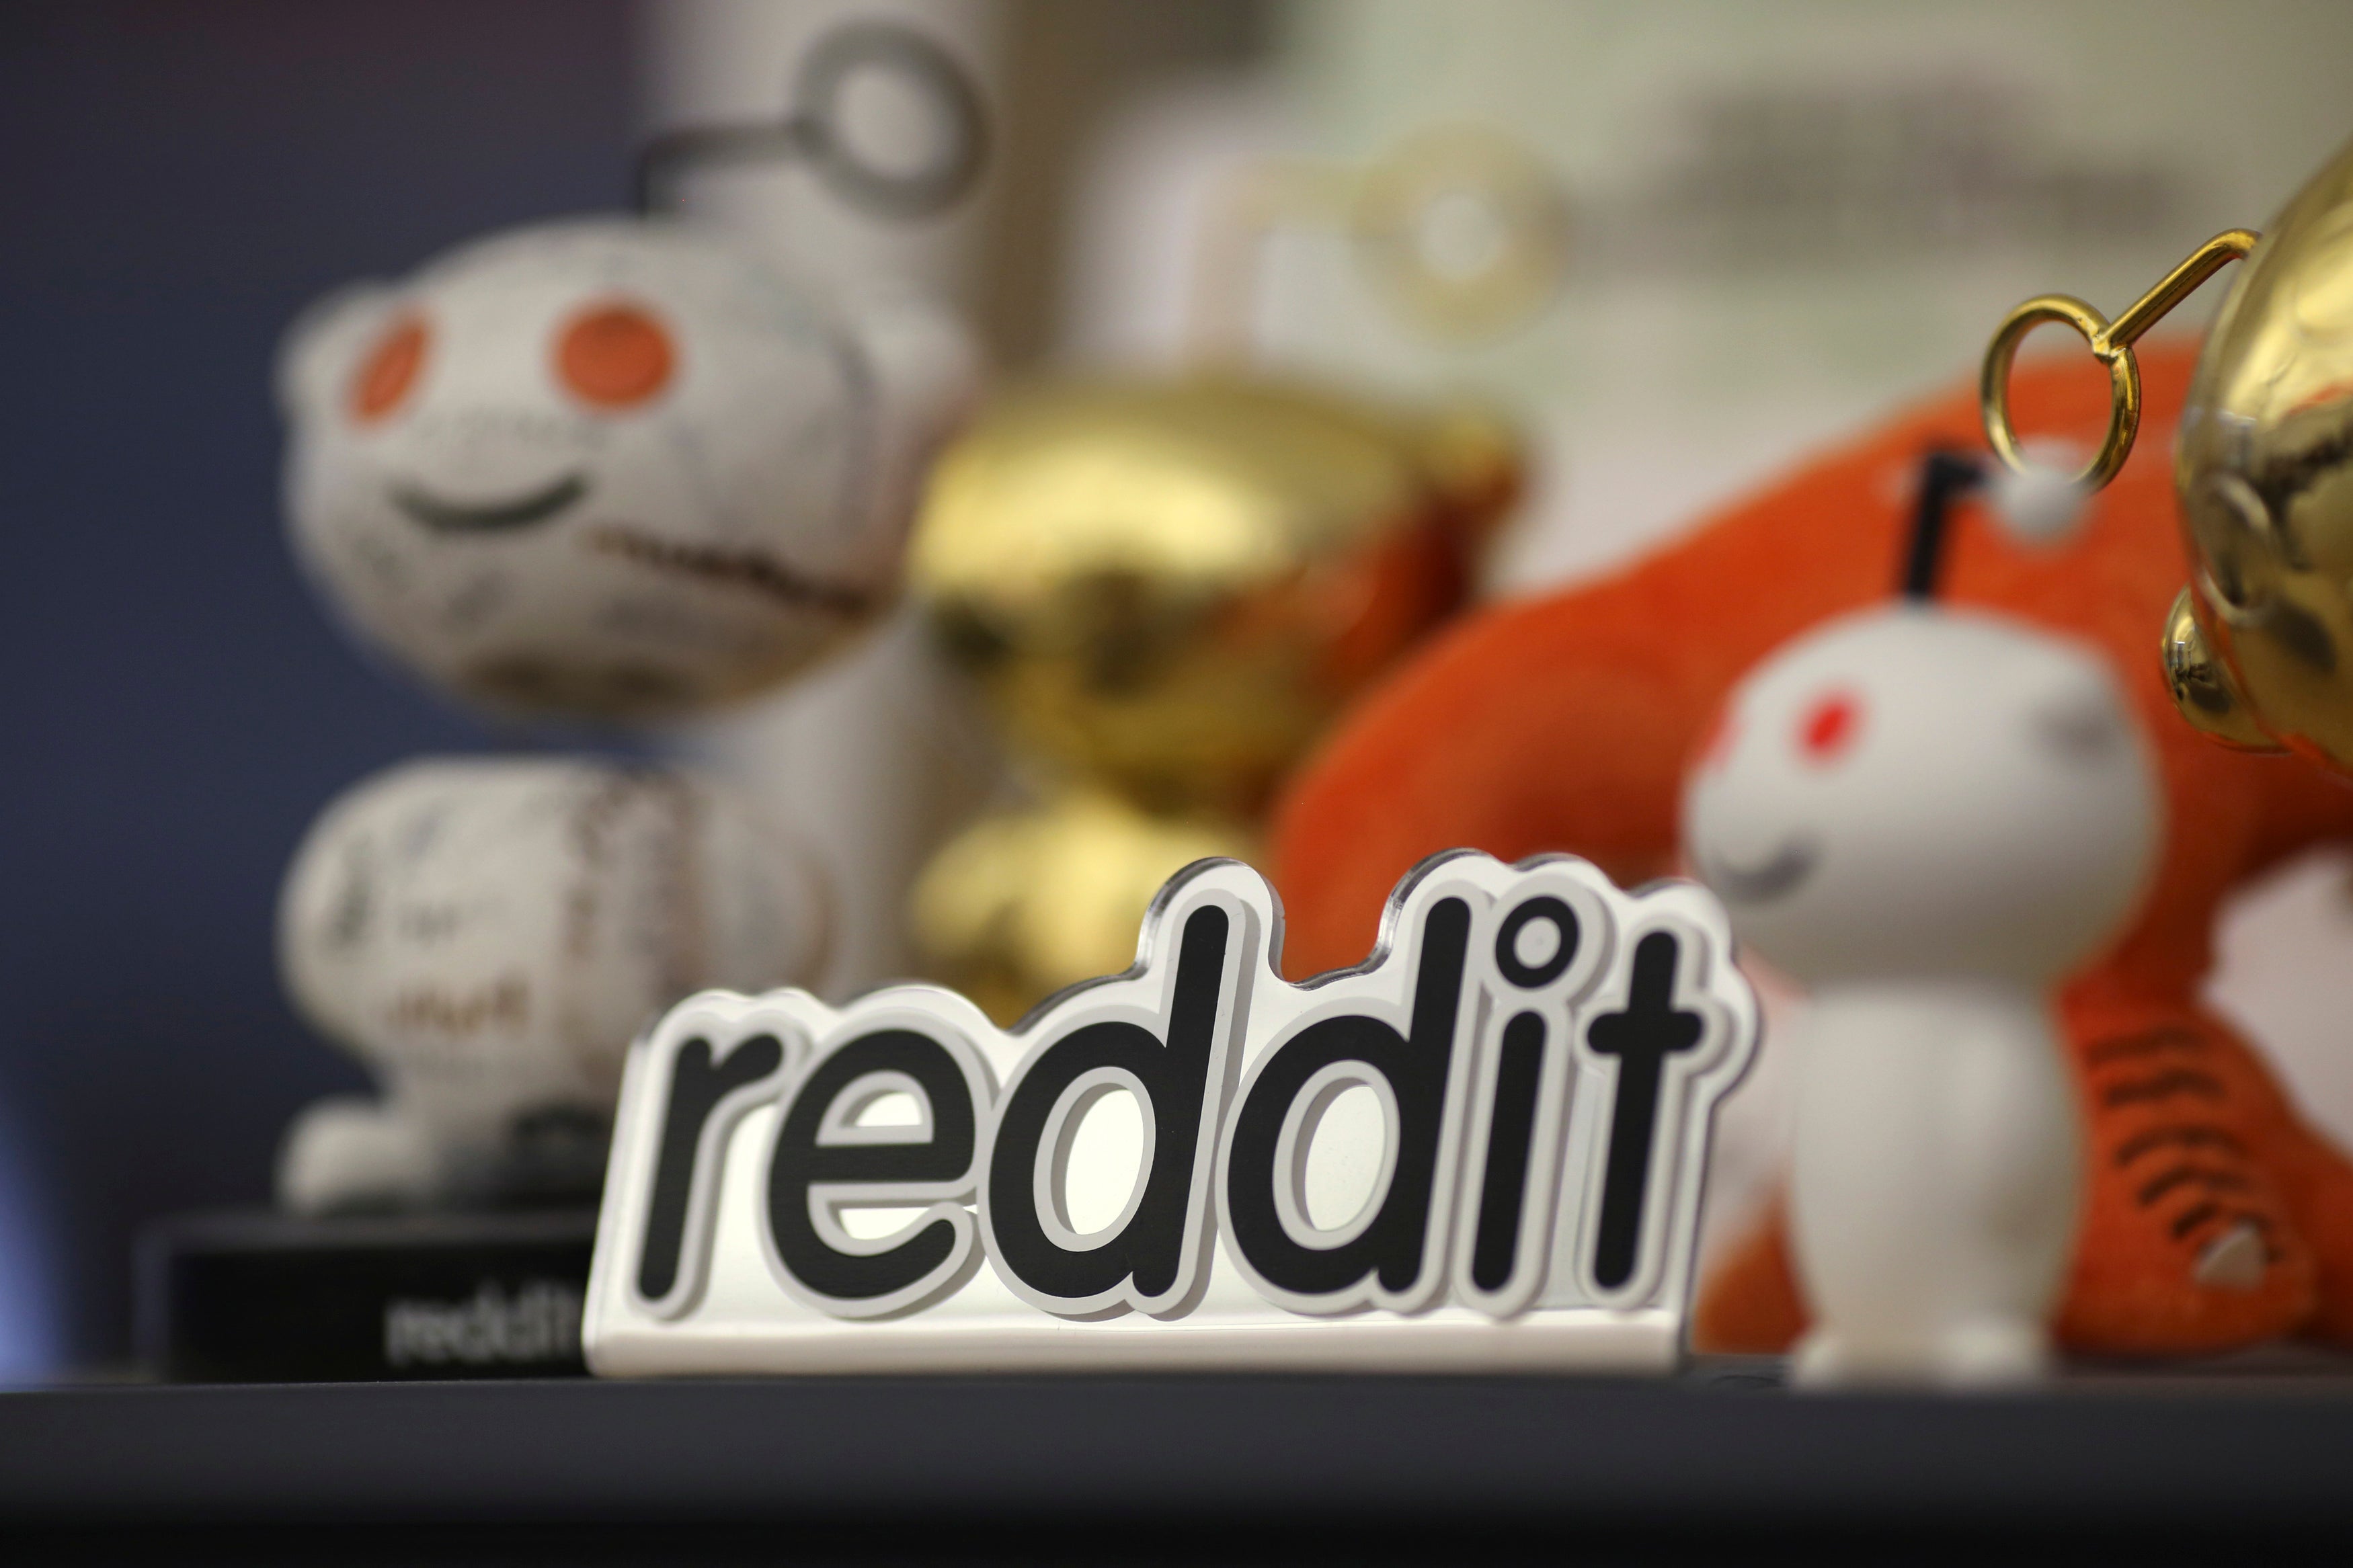 The Reddit office. Awwww.